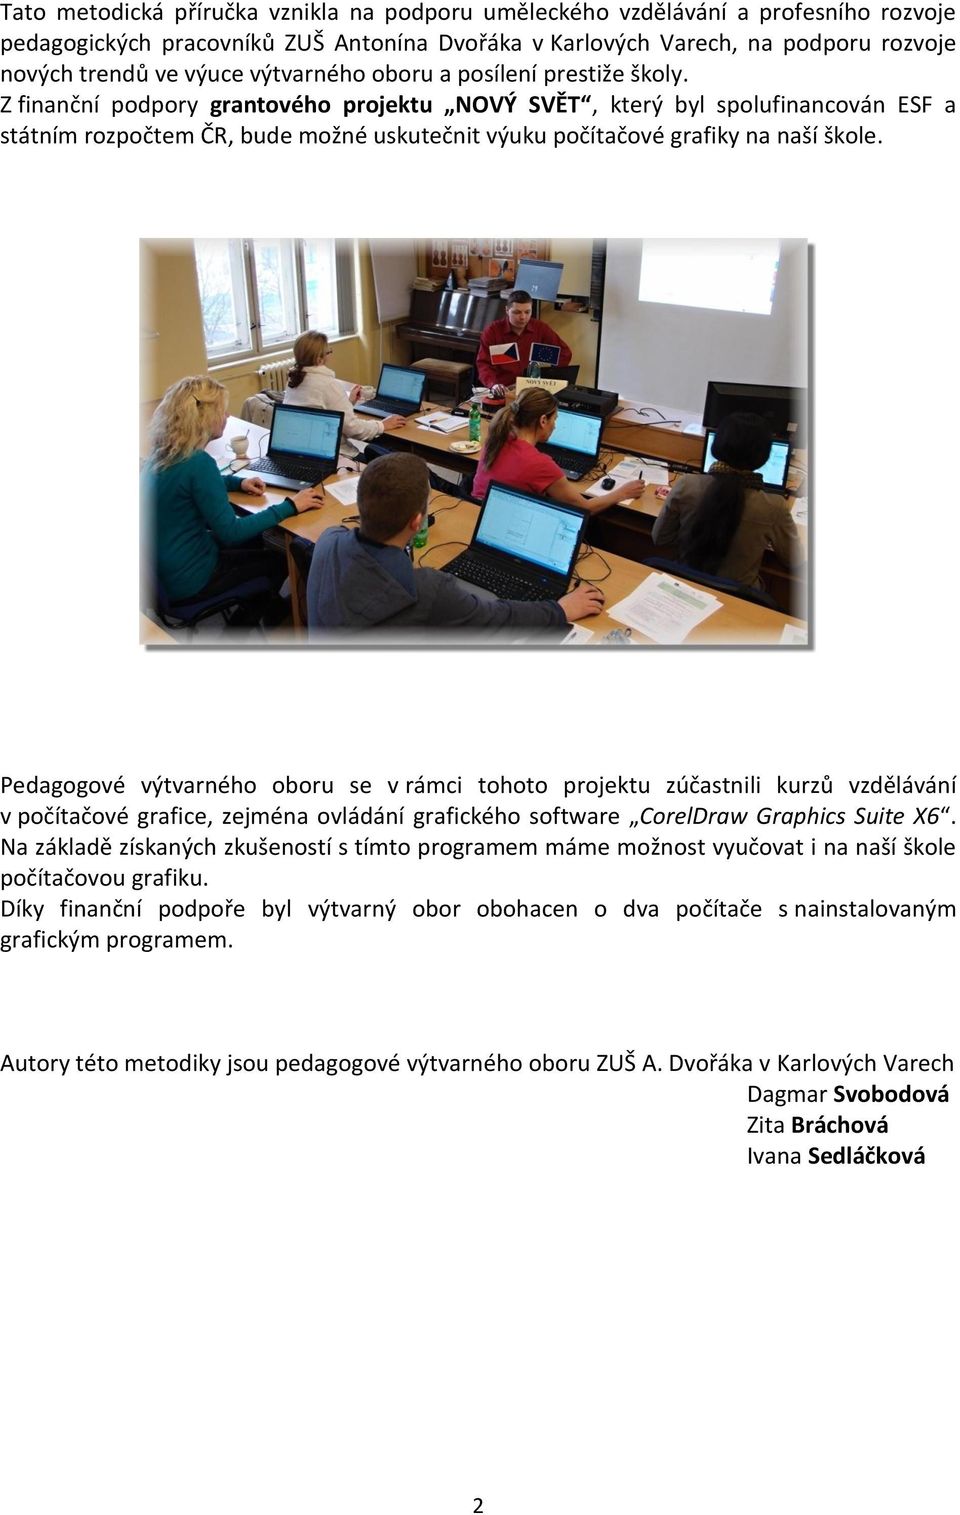 Z finanční podpory grantového projektu NOVÝ SVĚT, který byl spolufinancován ESF a státním rozpočtem ČR, bude možné uskutečnit výuku počítačové grafiky na naší škole.